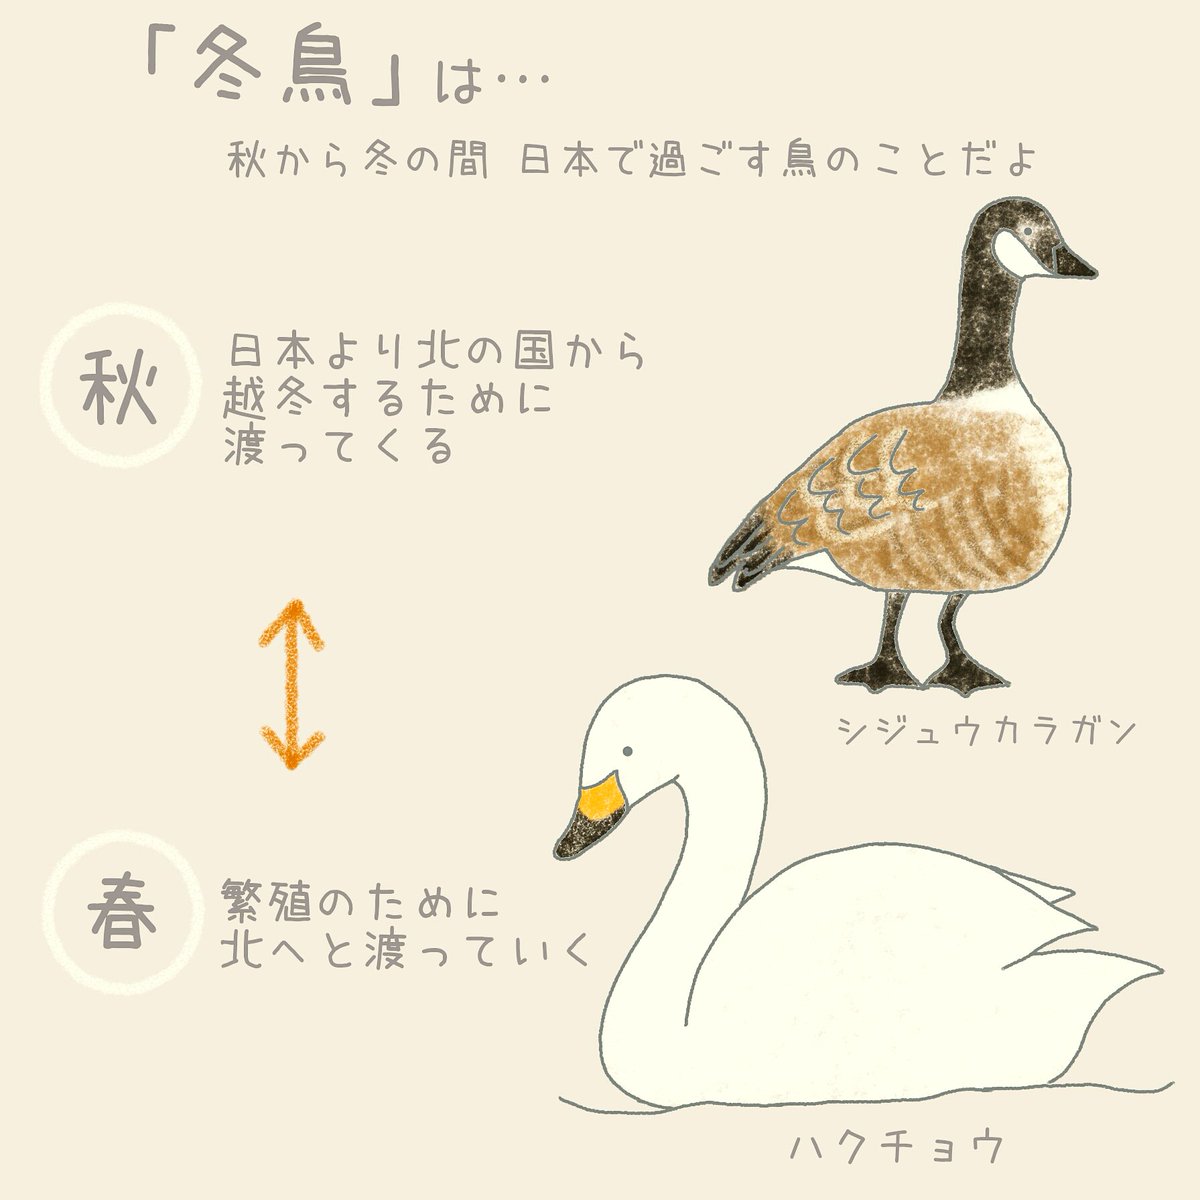 冬の渡り鳥「冬鳥」さん。
ちょうど今の季節日本にやってきてるのかなぁ。

#イラスト #イラスト好きな人と繋がりたい 
#教育
#学校では教えてくれないこと 